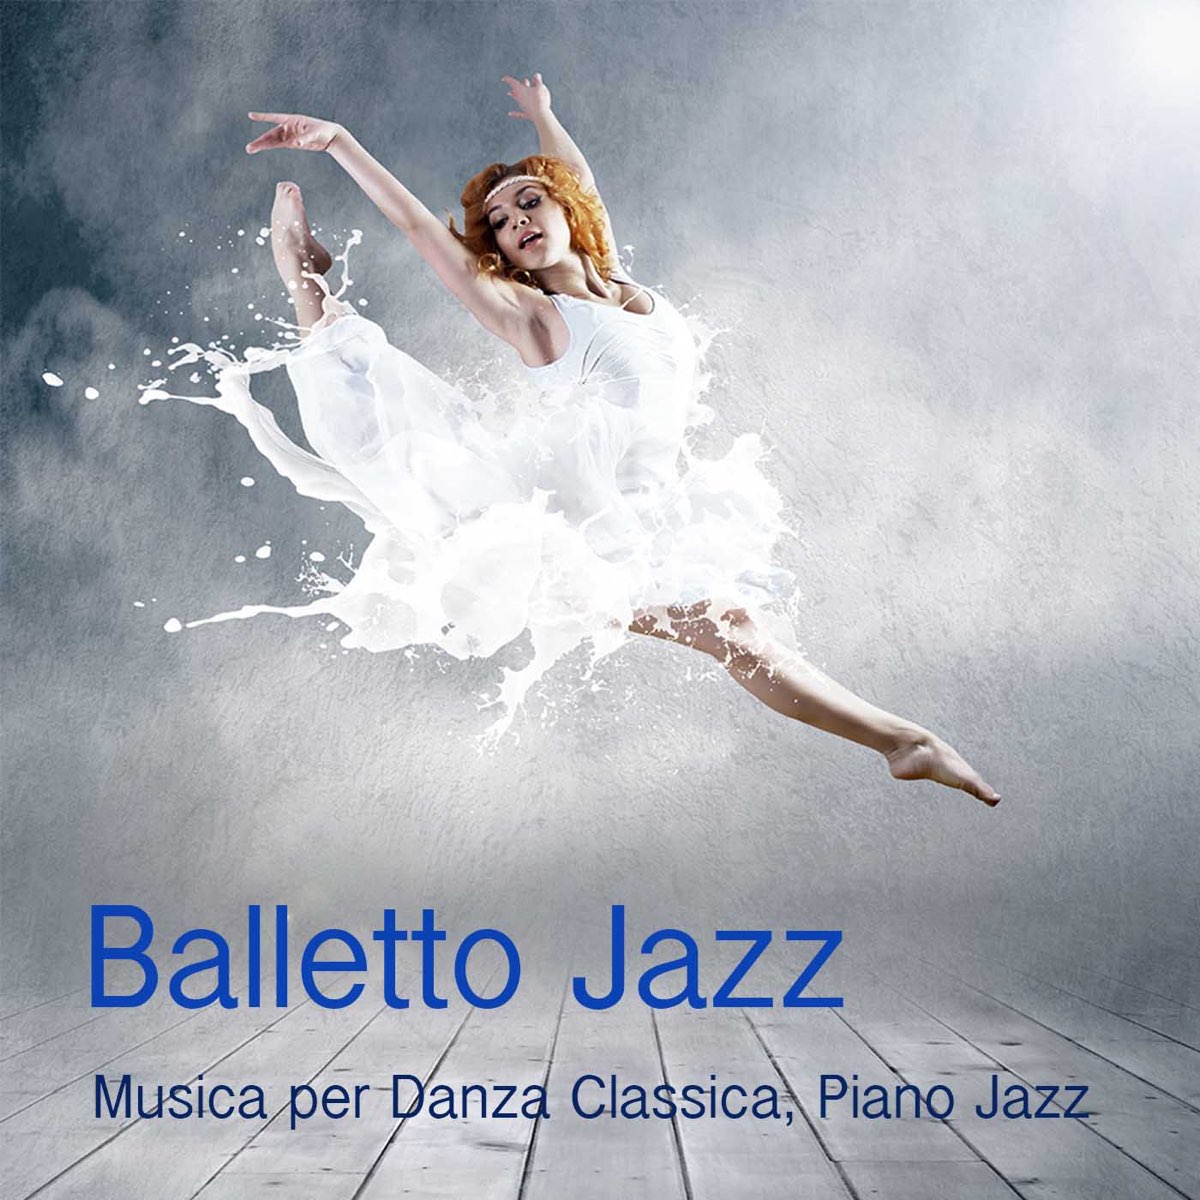 Balletto Jazz: Musica per Danza, Piano Jazz per Corsi di Danza Classica,  Balletto ed Esercizi alla Sbarra, Tango e Musica Sensuale - Album di  Balletto Jazz Compagnia - Apple Music